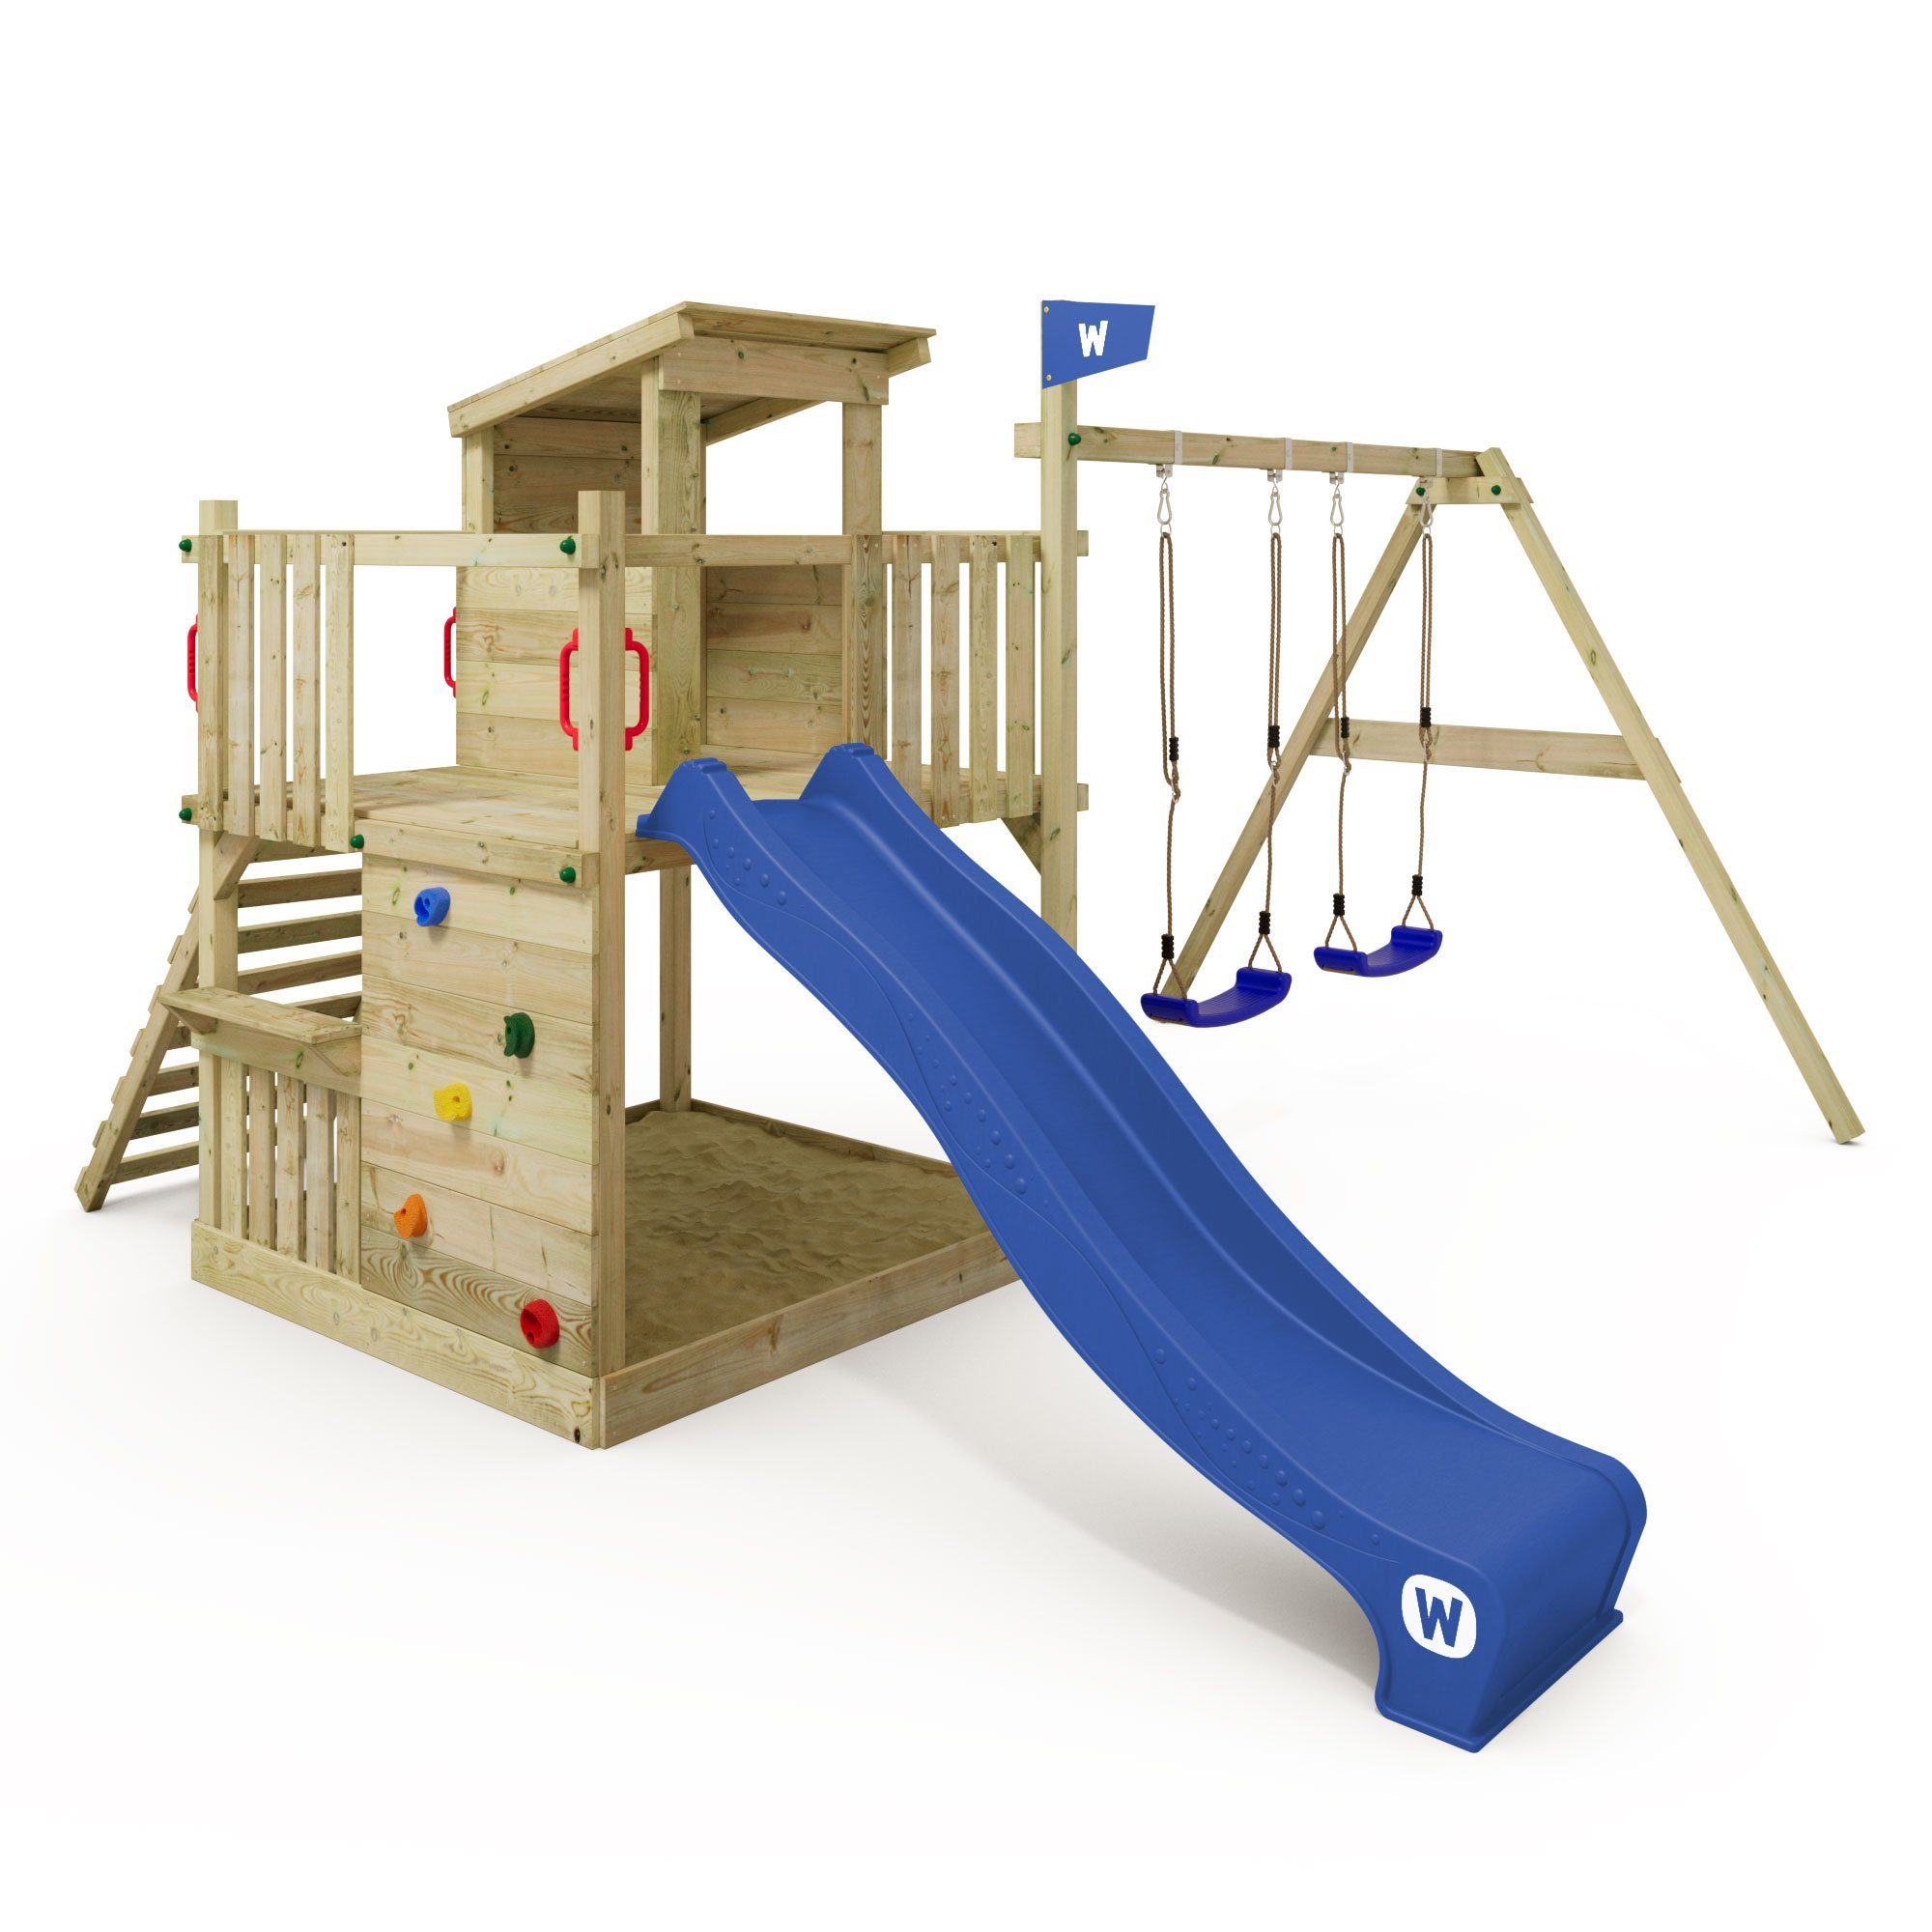 Wickey Klettergerüst Spielturm Smart Cabin mit Rutsche und großem Sandkasten, 10-jahre Garantie*, Spielhaus mit flachem Holzdach und Sitzbank blau